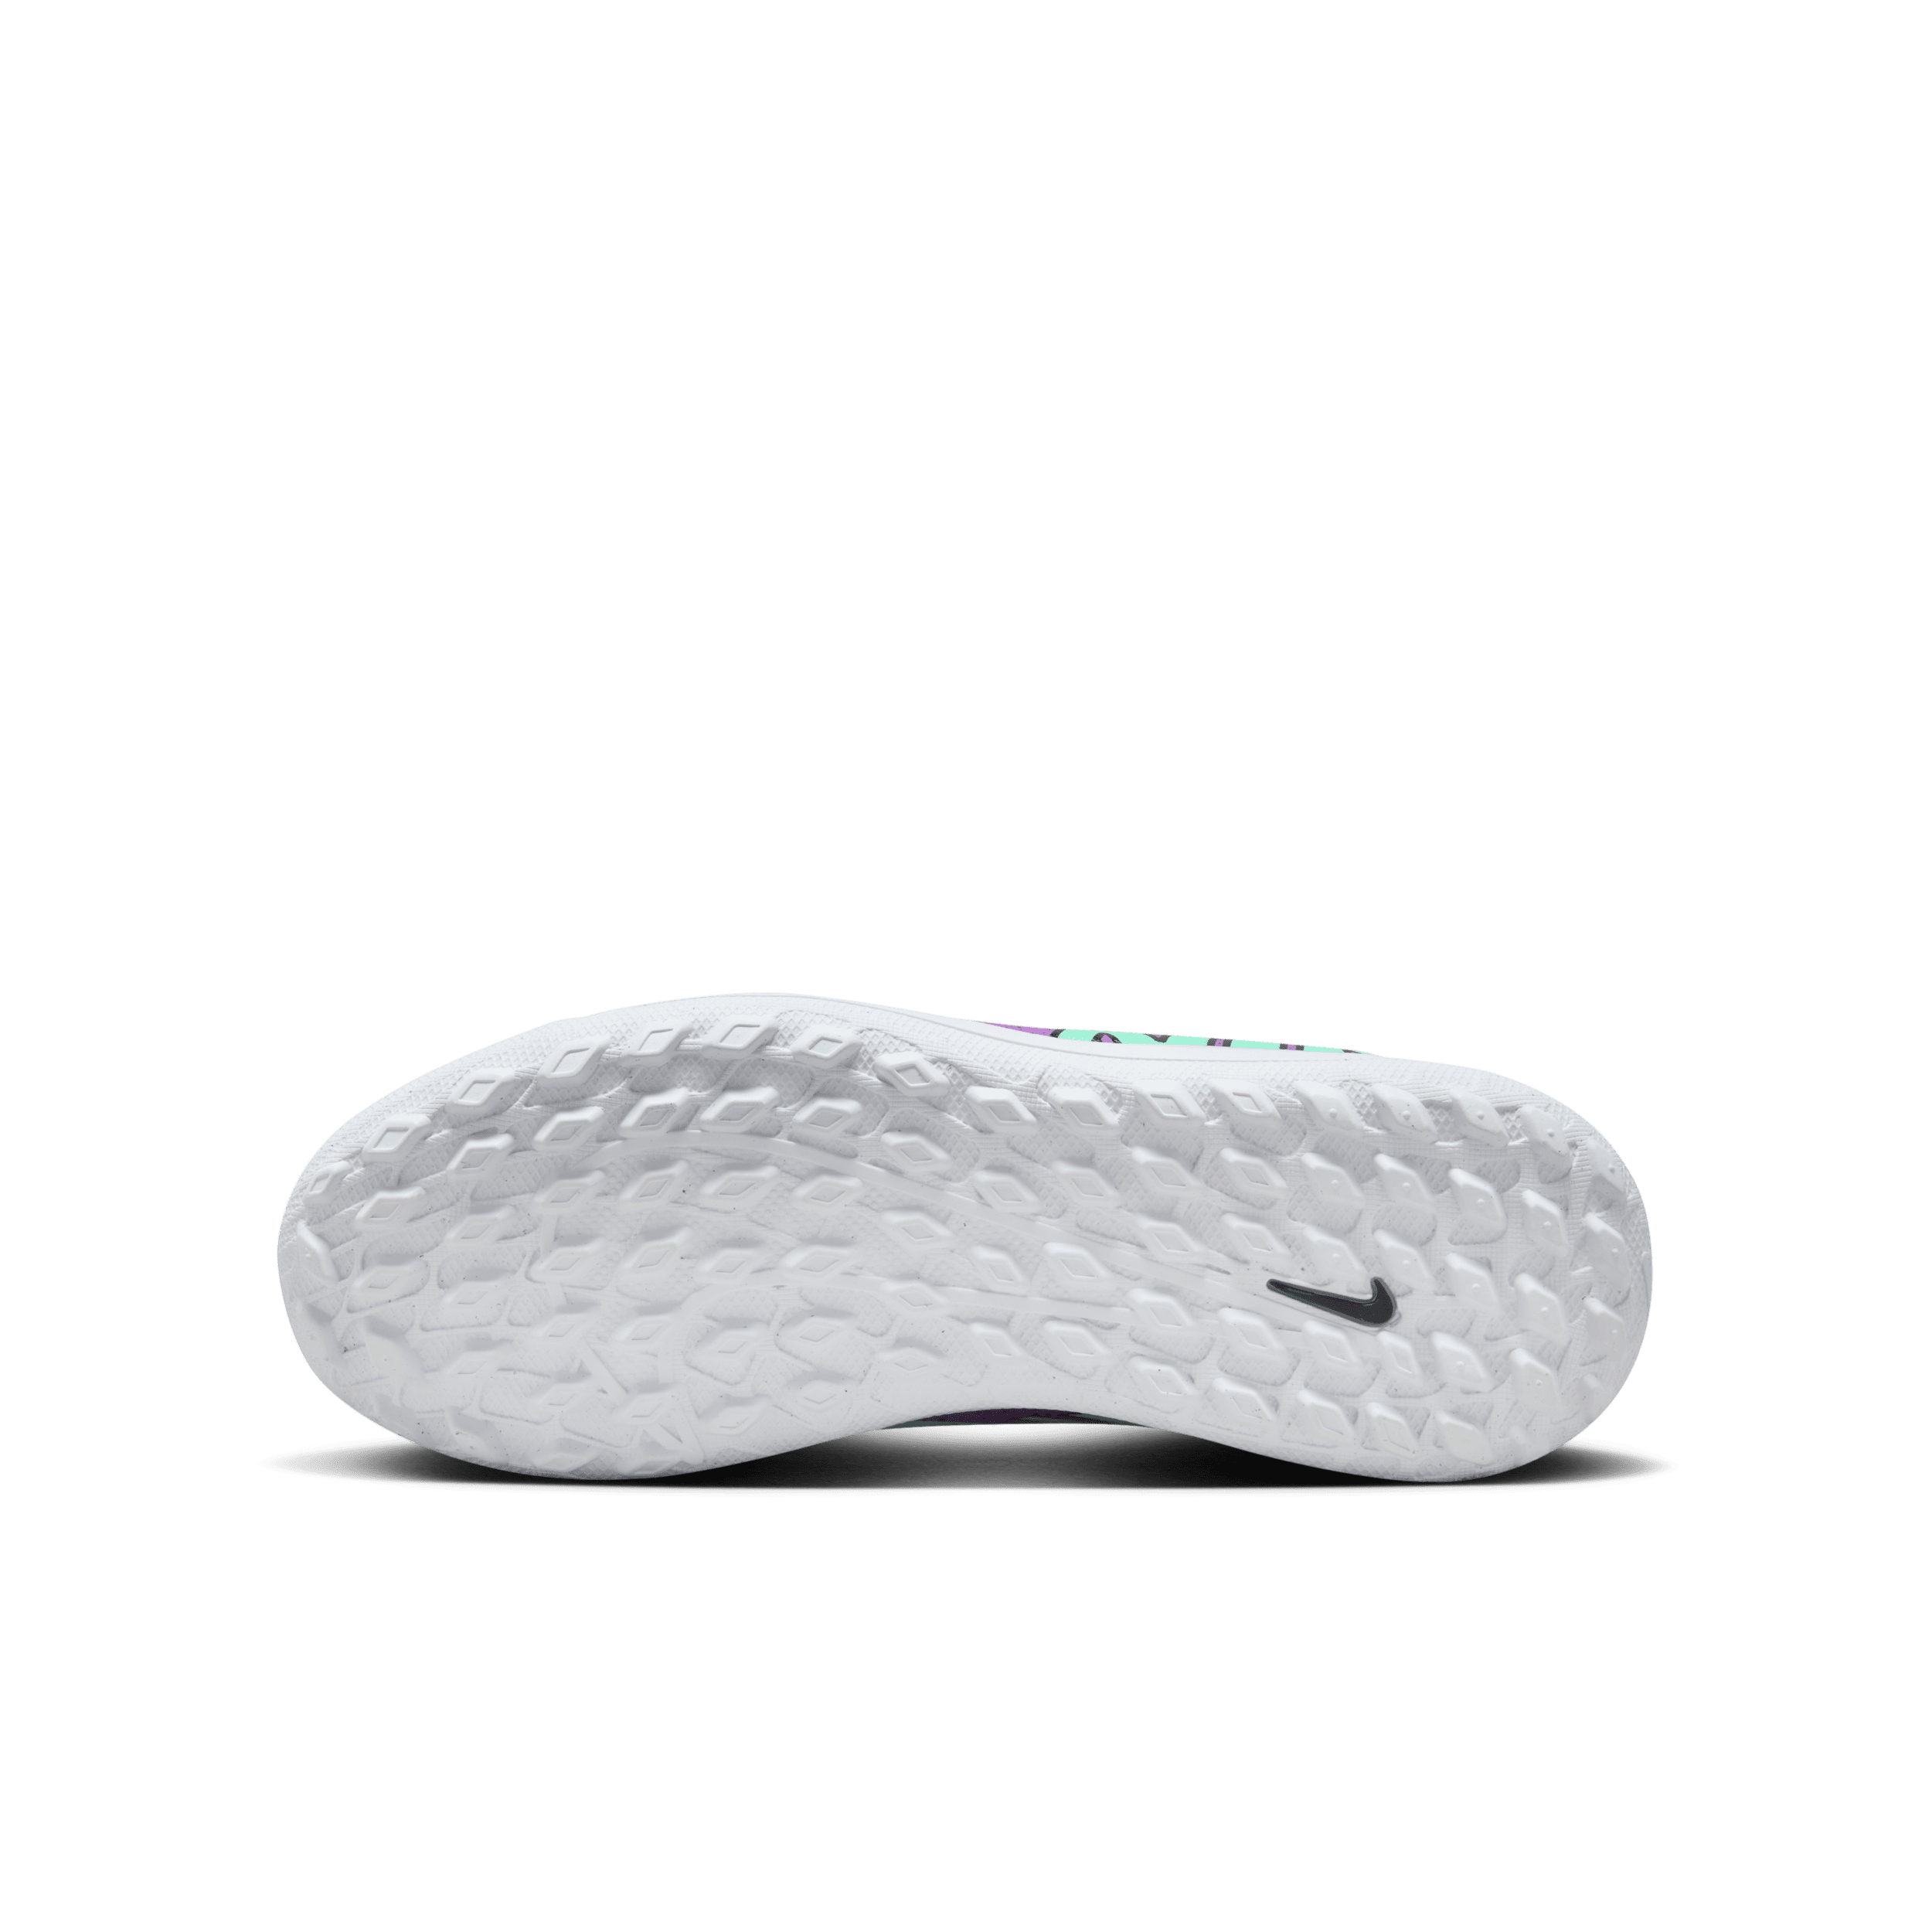 Nike Jr. Mercurial Vapor 15 Club low top voetbalschoenen voor kleuters kids (turf) Groen